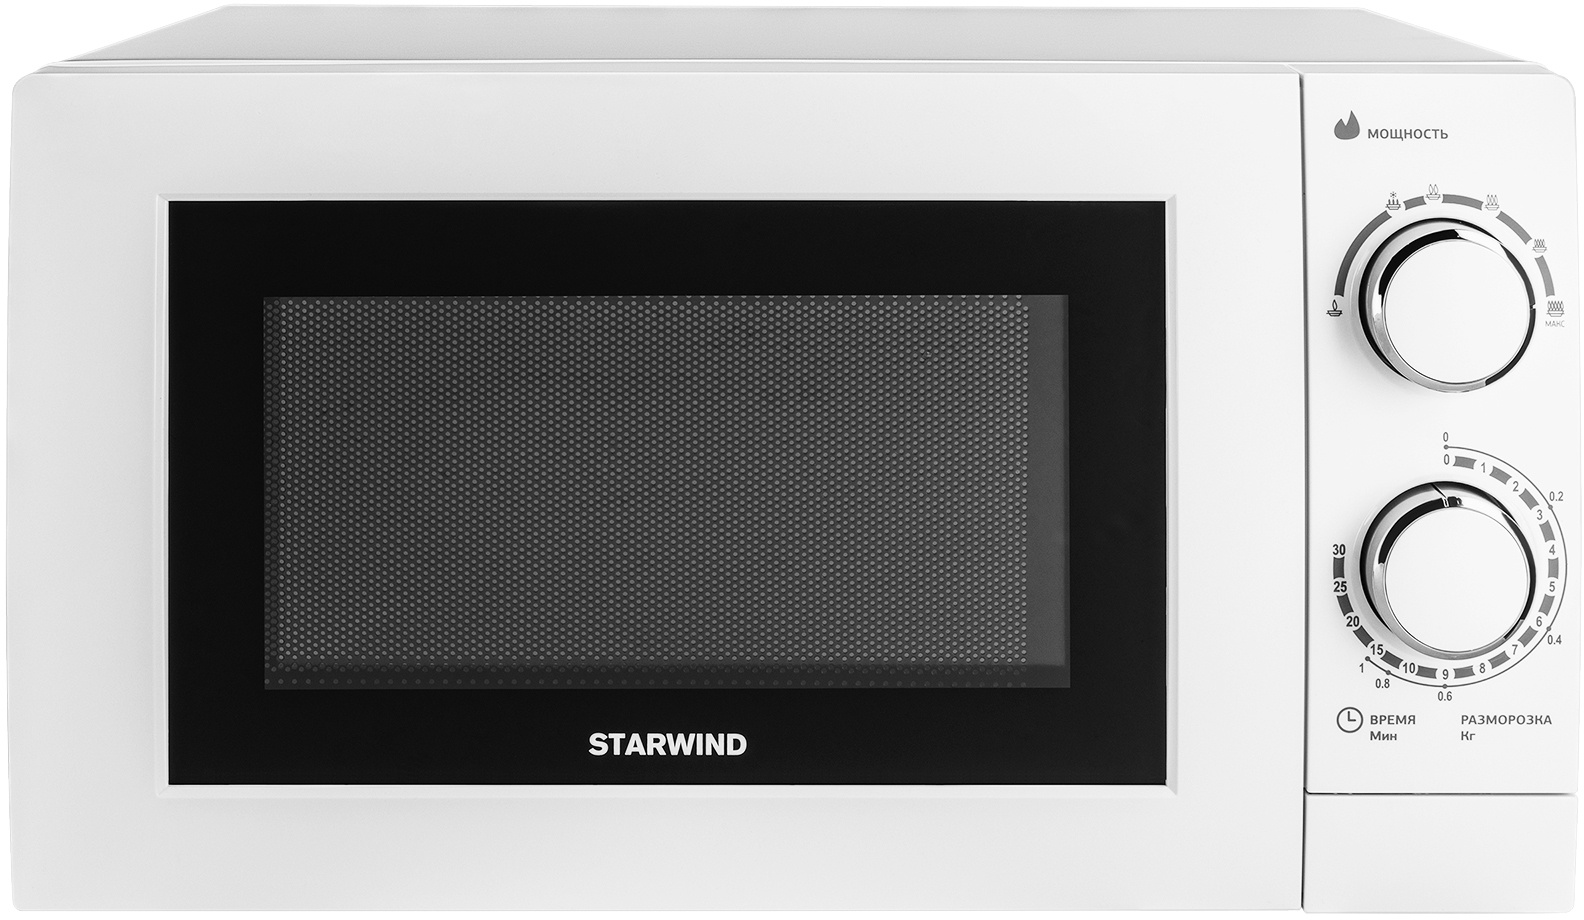 Микроволновая печь соло STARWIND SMW3820 белый, купить в Москве, цены в интернет-магазинах на Мегамаркет